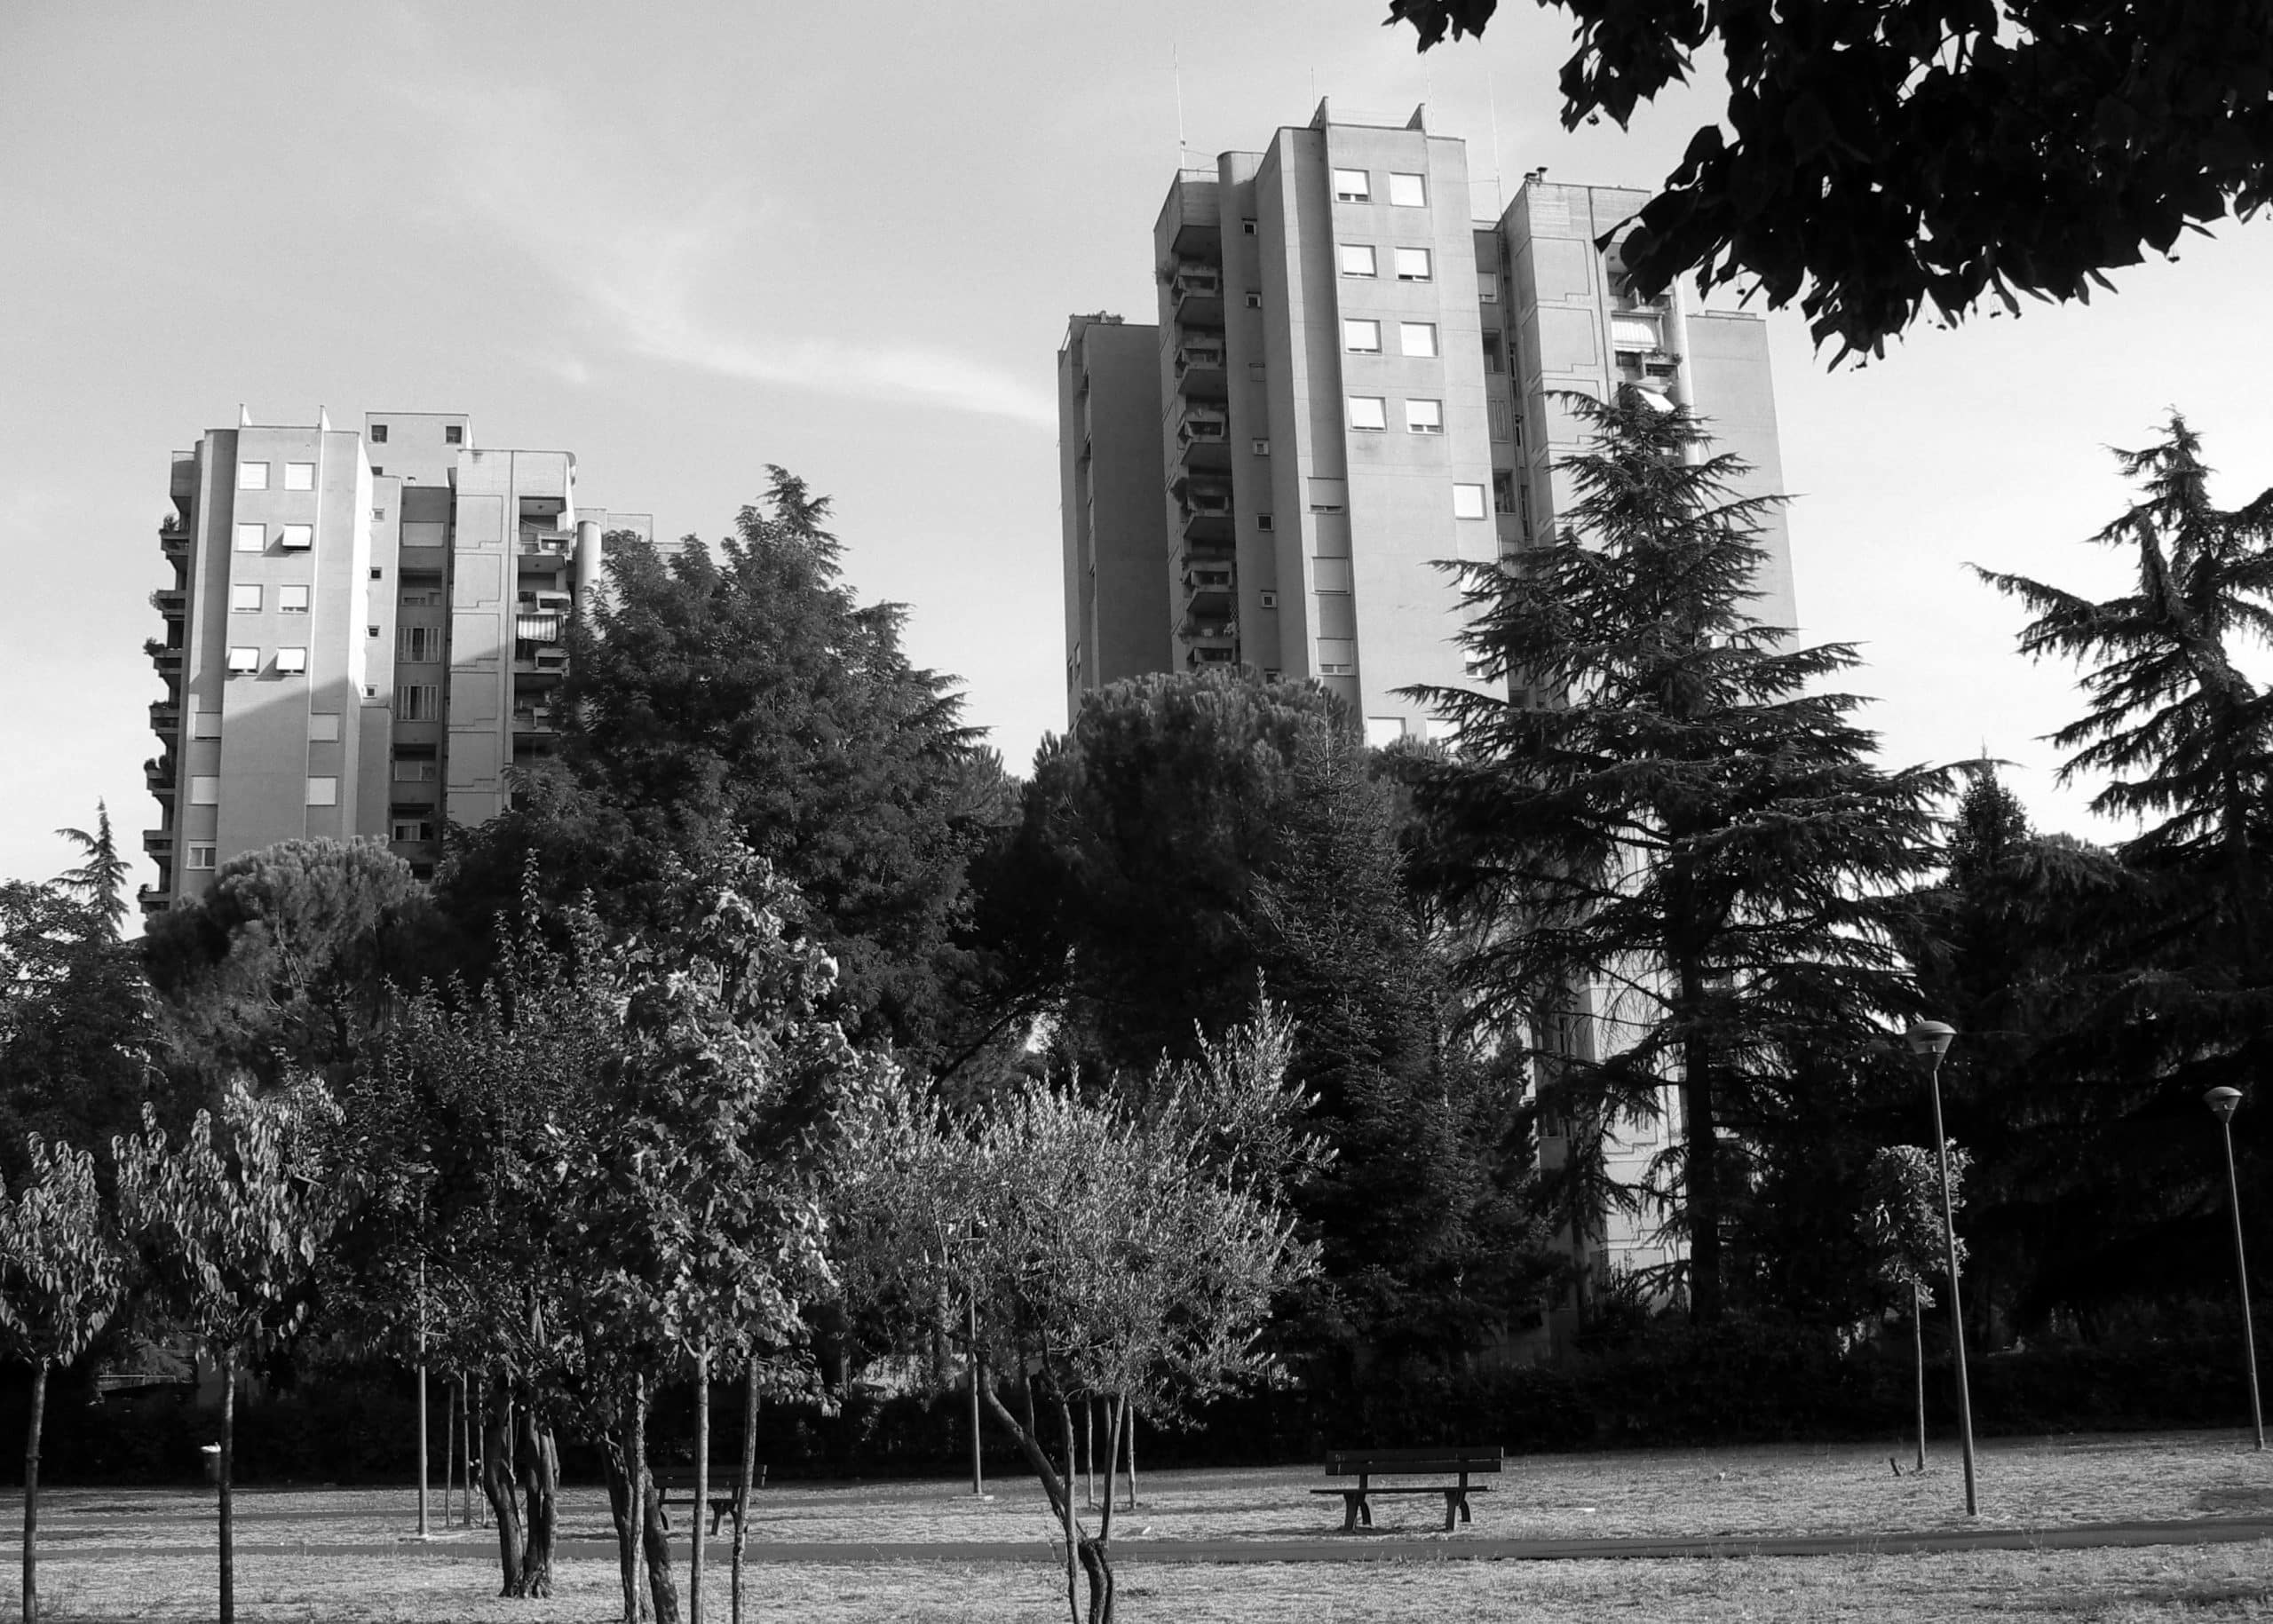 24 - Quattro edifici a torre per complessivi 112 alloggi nel PdZ Cesura Le Grazie, Terni, per Coop. Astra; progetto CoPER - Vista esterna